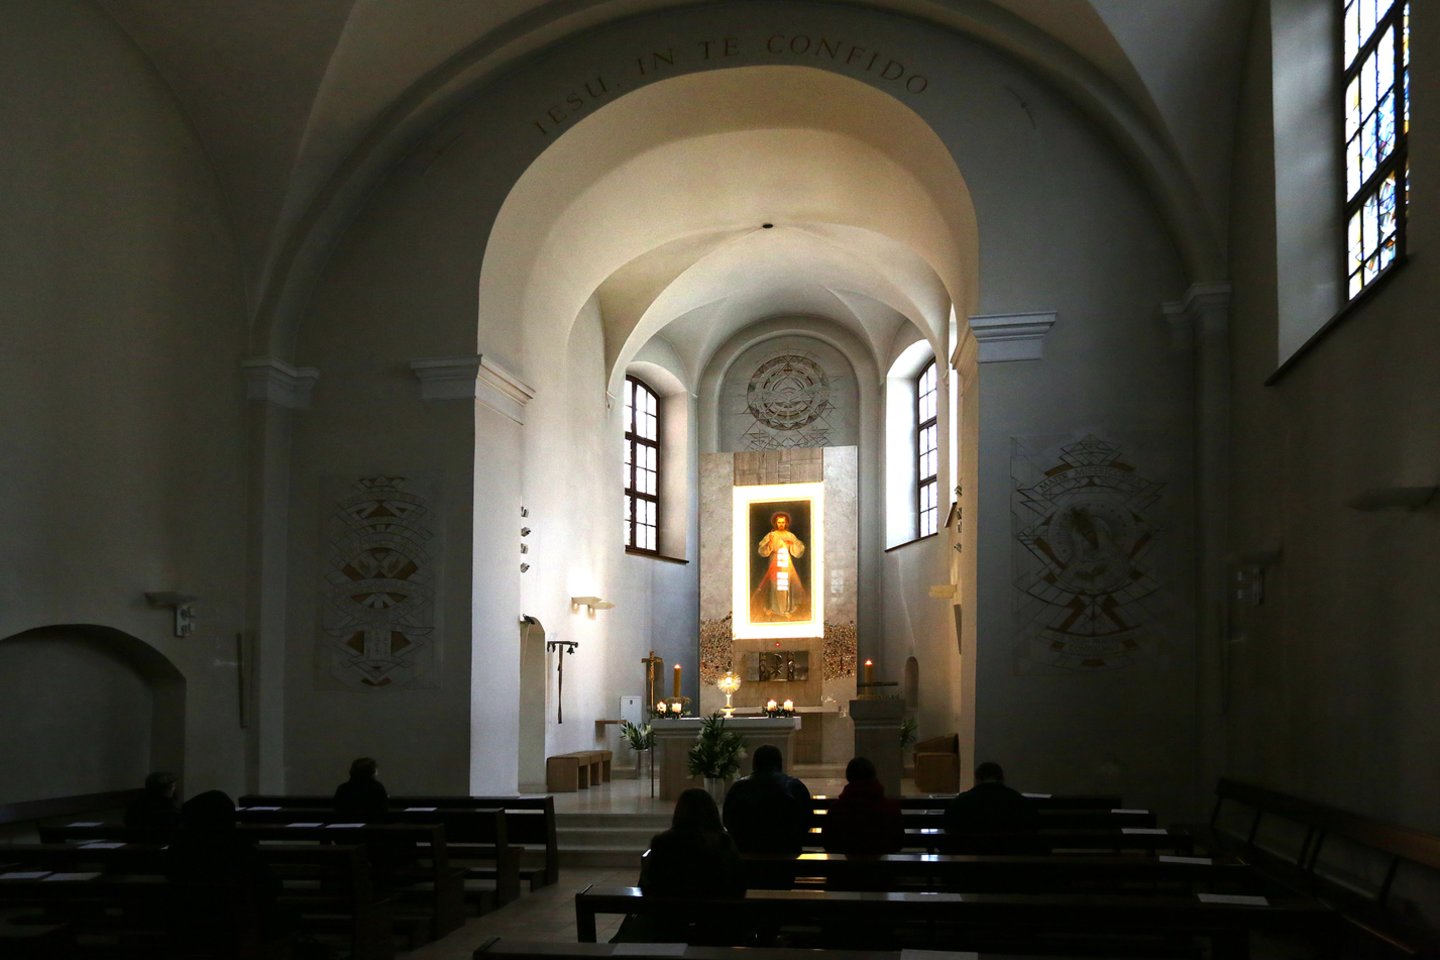 2004 m. pašventinta restauruota Šventosios Trejybės bažnyčia Vilniuje, nuo šiol ji bus vadinama Dievo Gailestingumo šventove. Ta proga ketinta iš šalia esančios Šventosios Dvasios bažnyčios perkelti Gailestingojo Jėzaus paveikslą, tačiau jo perkėlimui pasipriešino lenkų tikintieji. Paveikslas buvo perkeltas 2005 m. rugsėjo 28 d. Gailestingojo Jėzaus paveikslą 1934 m. nutapė dailininkas Eugeniuszas Kazimirowskis pagal šventosios Faustinos Kowalskos regėjimą.<br>V.Balkūno nuotr.